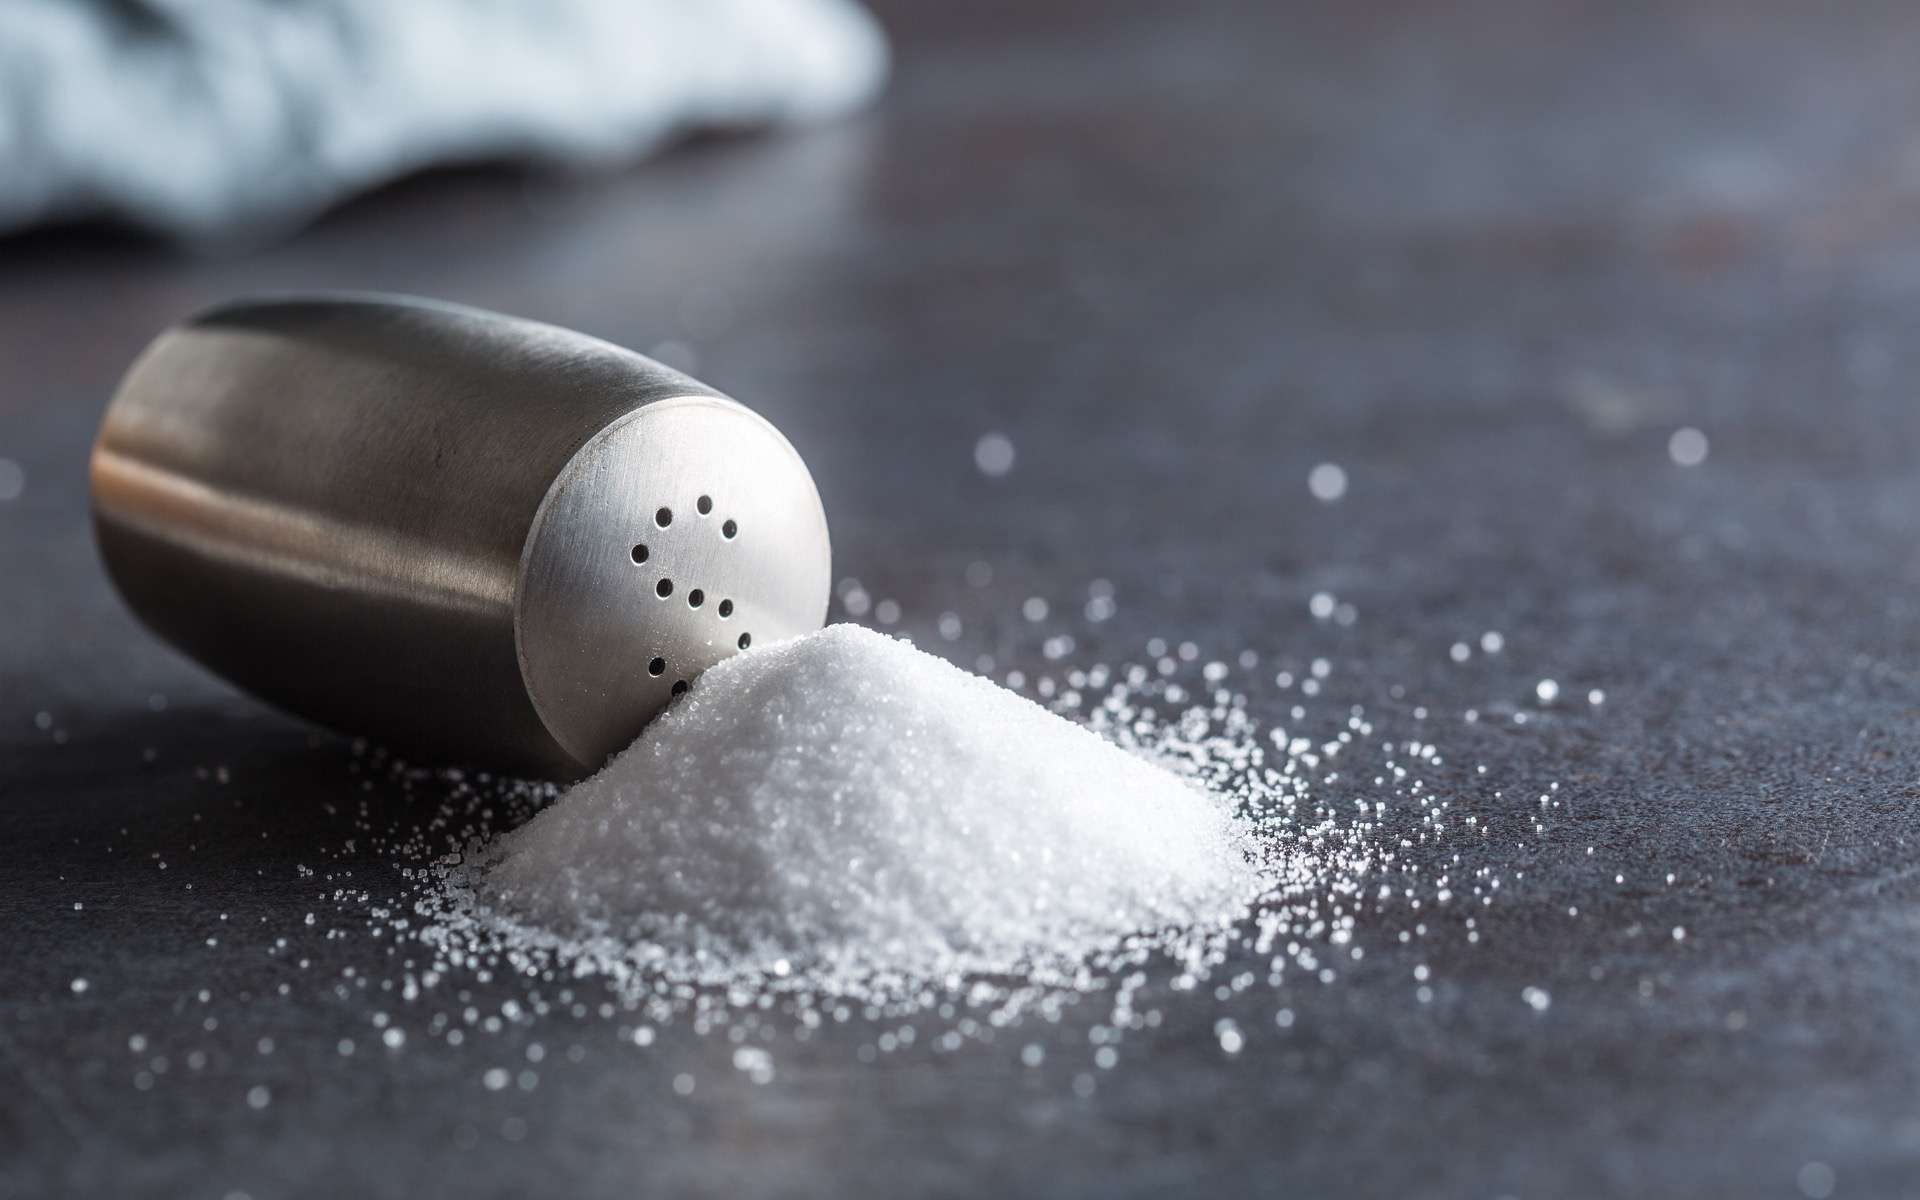 Le sel est nécessaire au bon fonctionnement de l'organisme, mais sa consommation en excès est mauvaise pour la santé. © Weyo, Adobe Stock